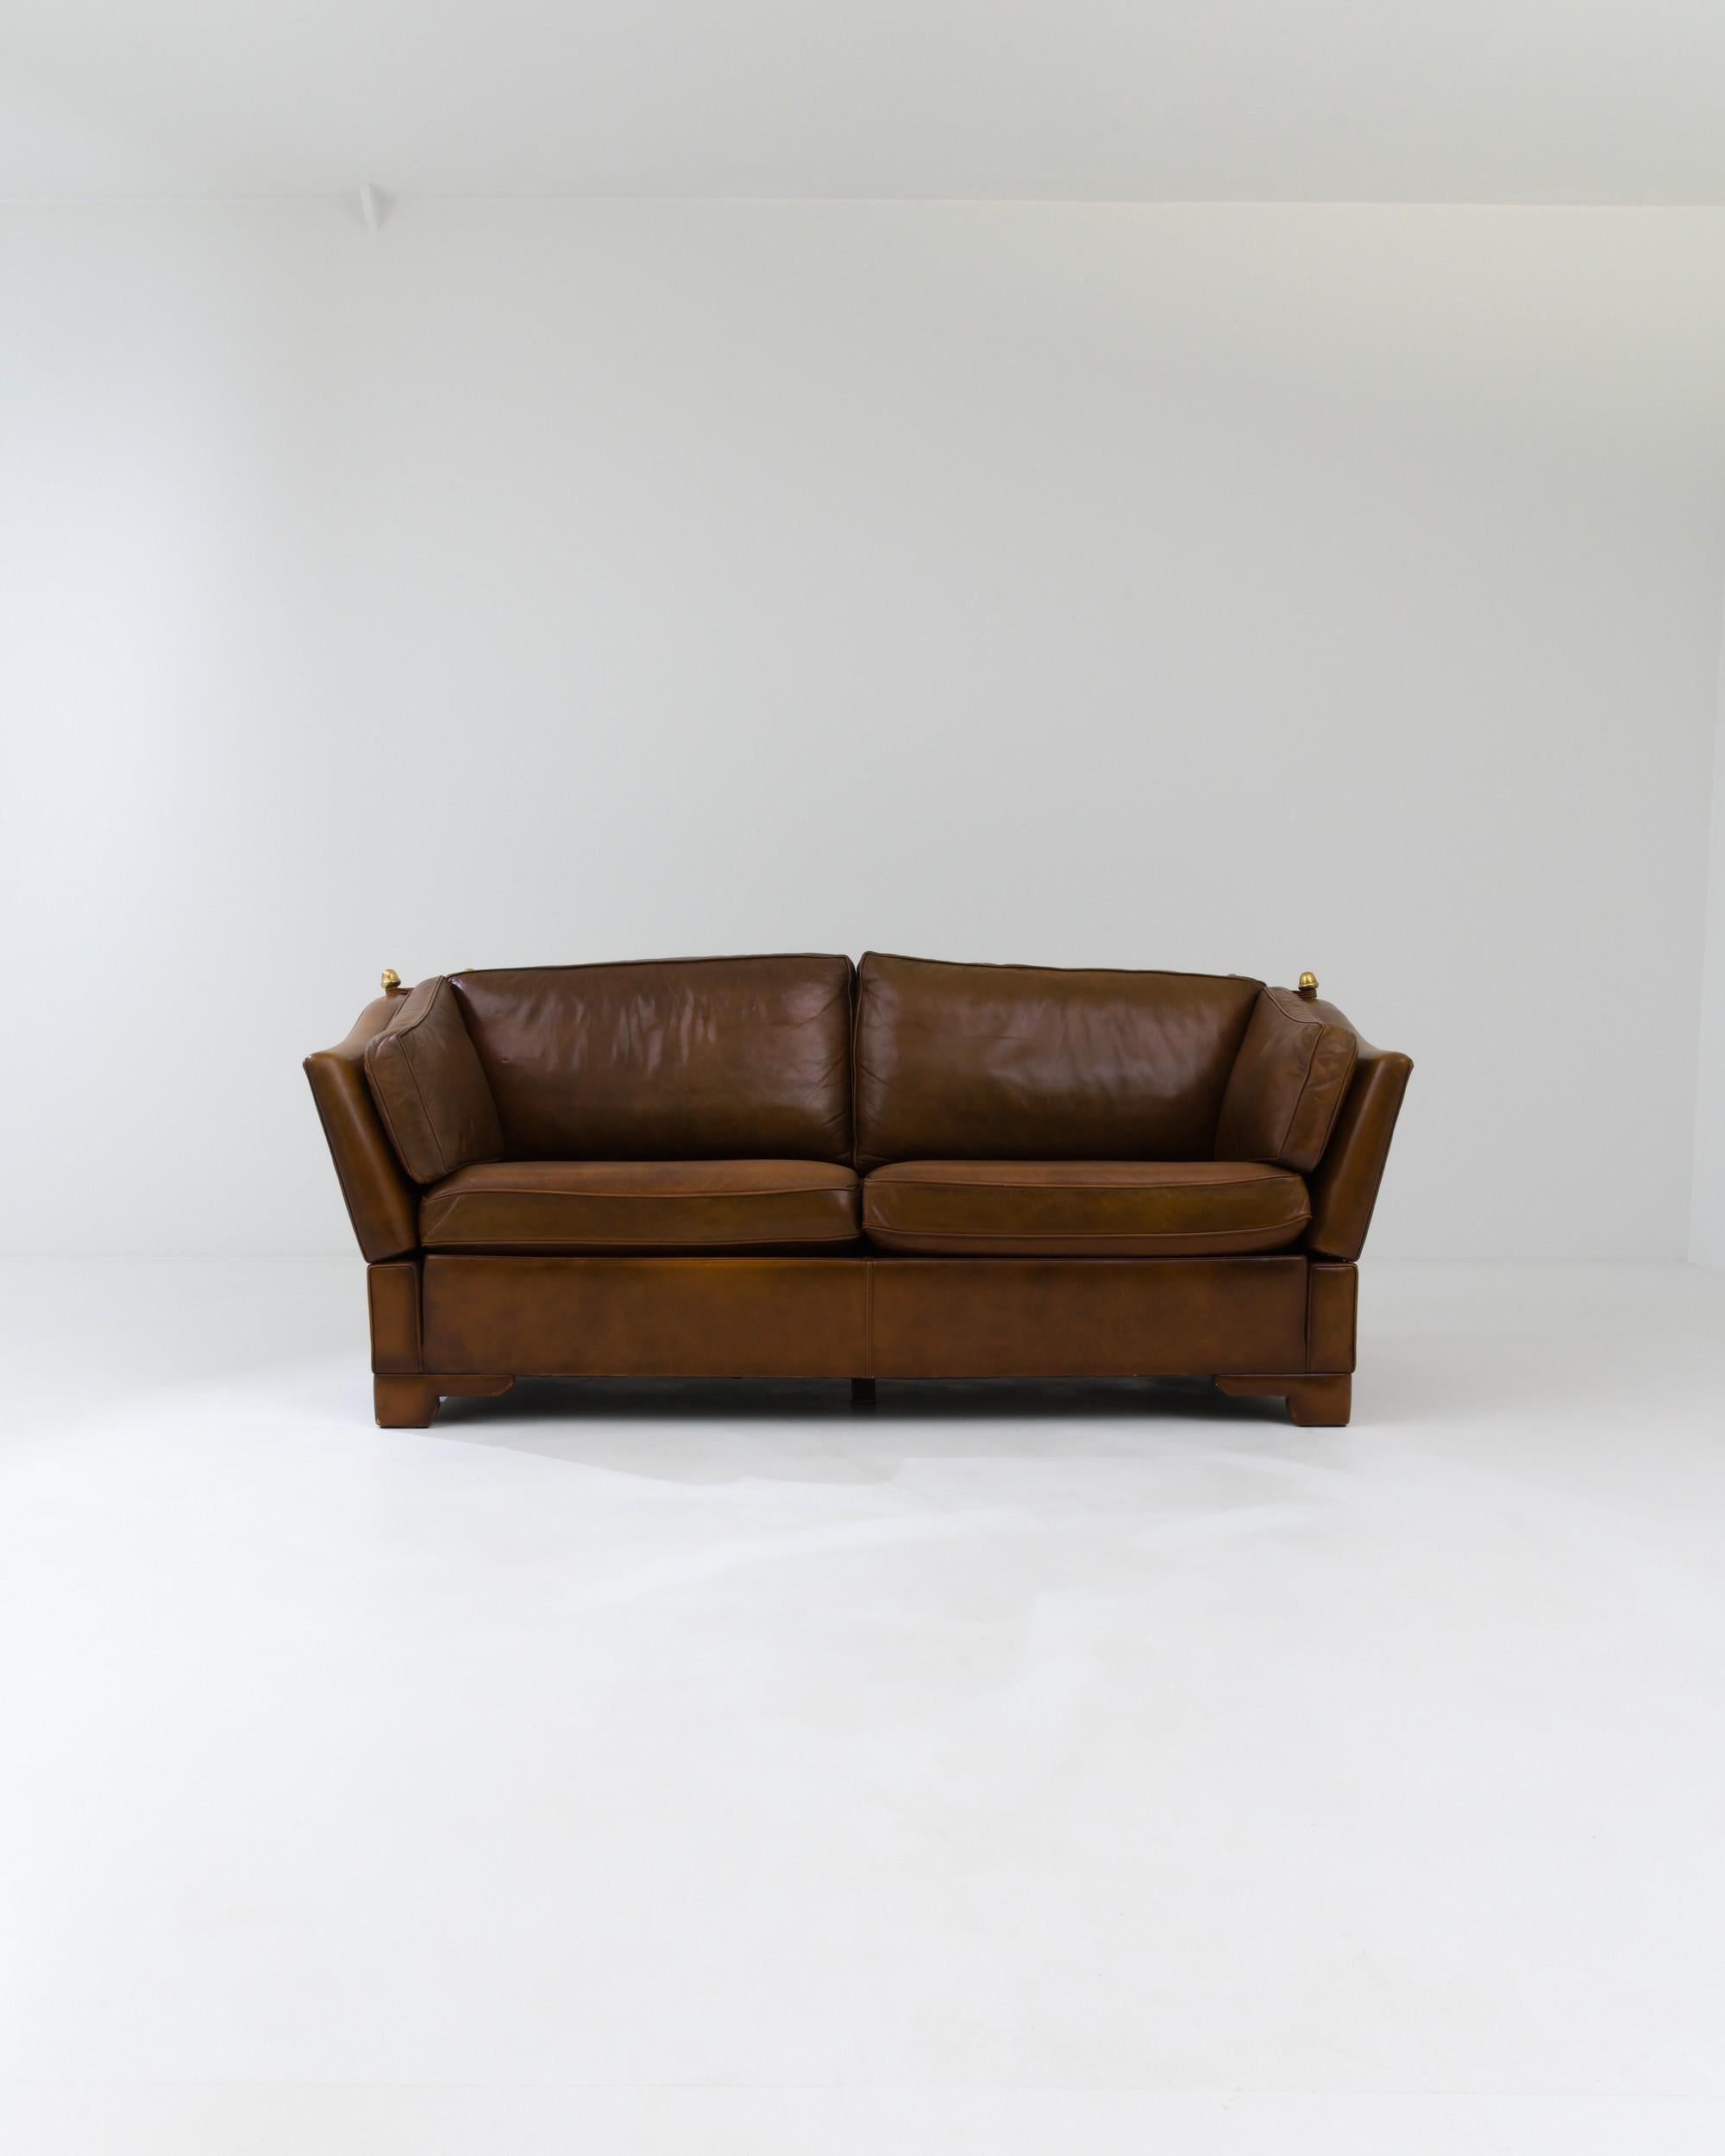 Conçu au Royaume-Uni vers 1970, cet élégant canapé deux places en cuir présente un design innovant avec des côtés réglables qui peuvent être serrés ou desserrés à l'aide de cordes attachées aux ancres en laiton. Le ton du cuir de haute qualité passe